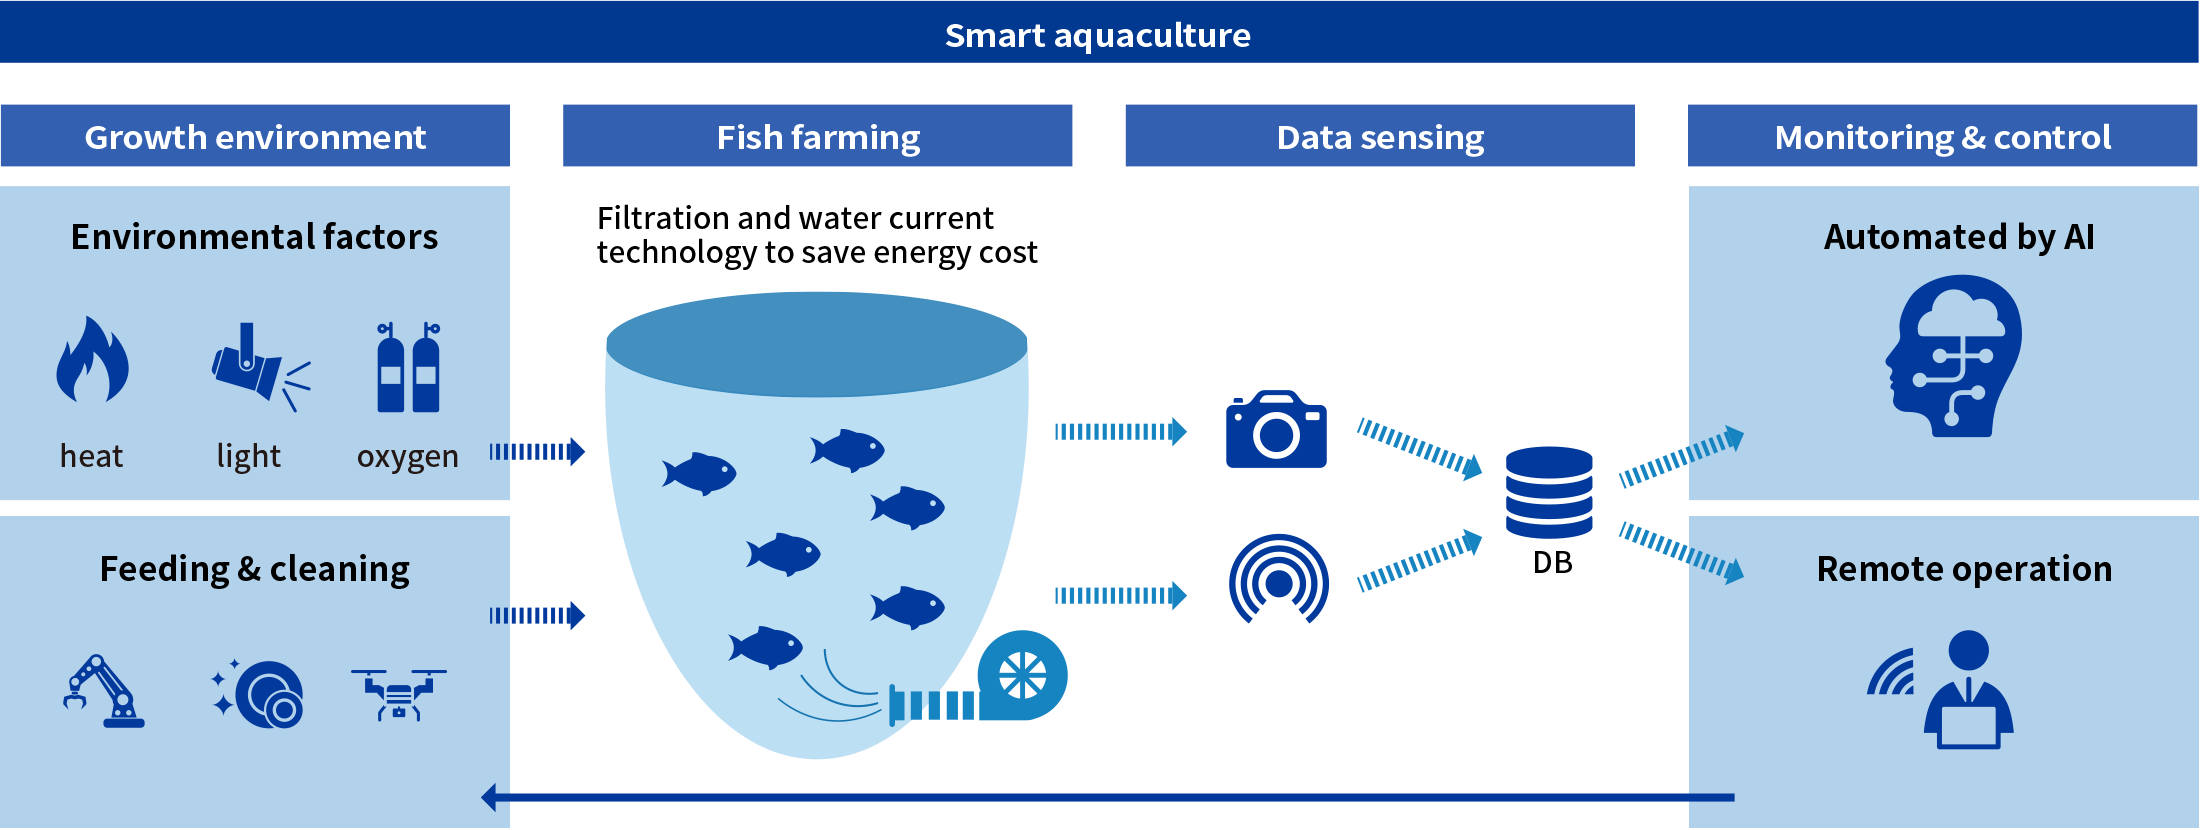 Smart aquaculture